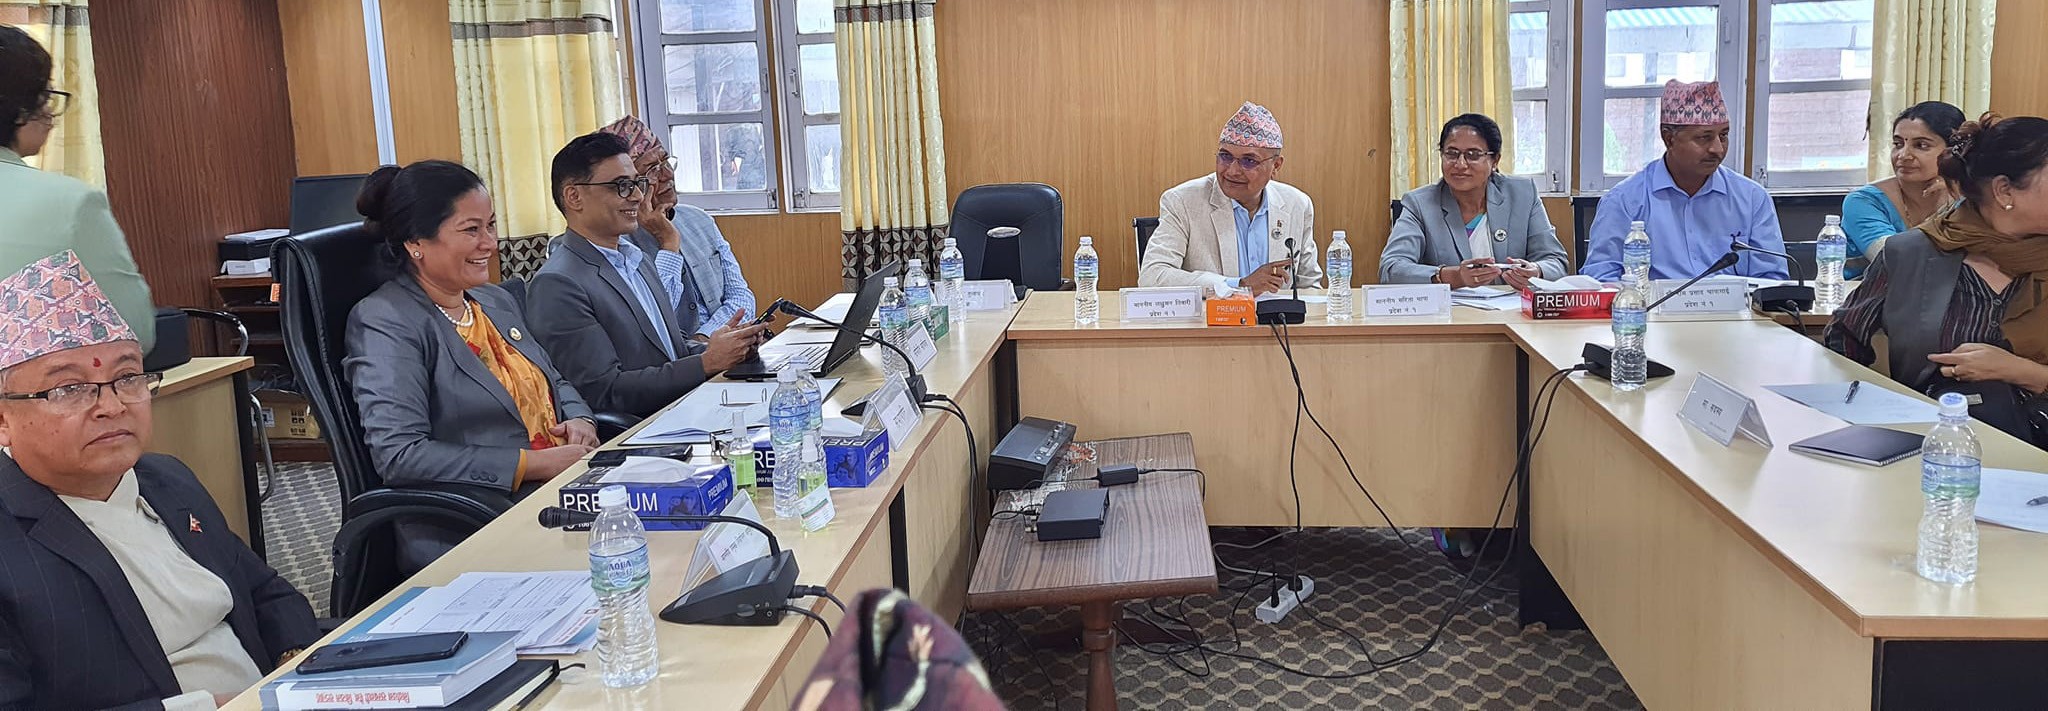 काठमाडौंमा सात वटै प्रदेशका सामाजिक समितीको छलफल शुरु